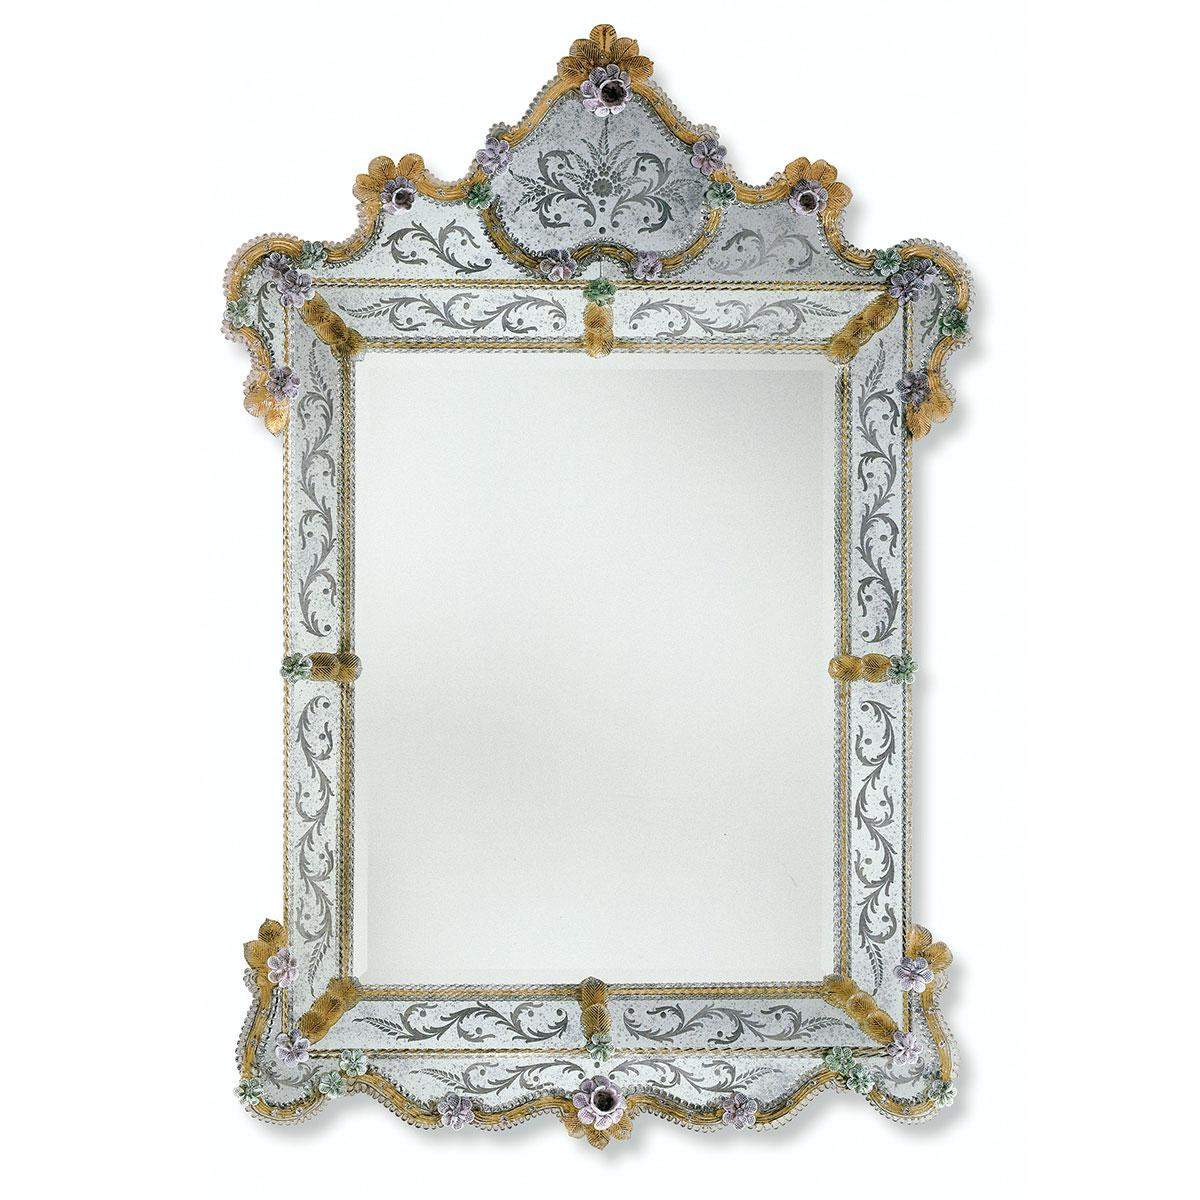 "Glenda" Murano glass venetian mirror